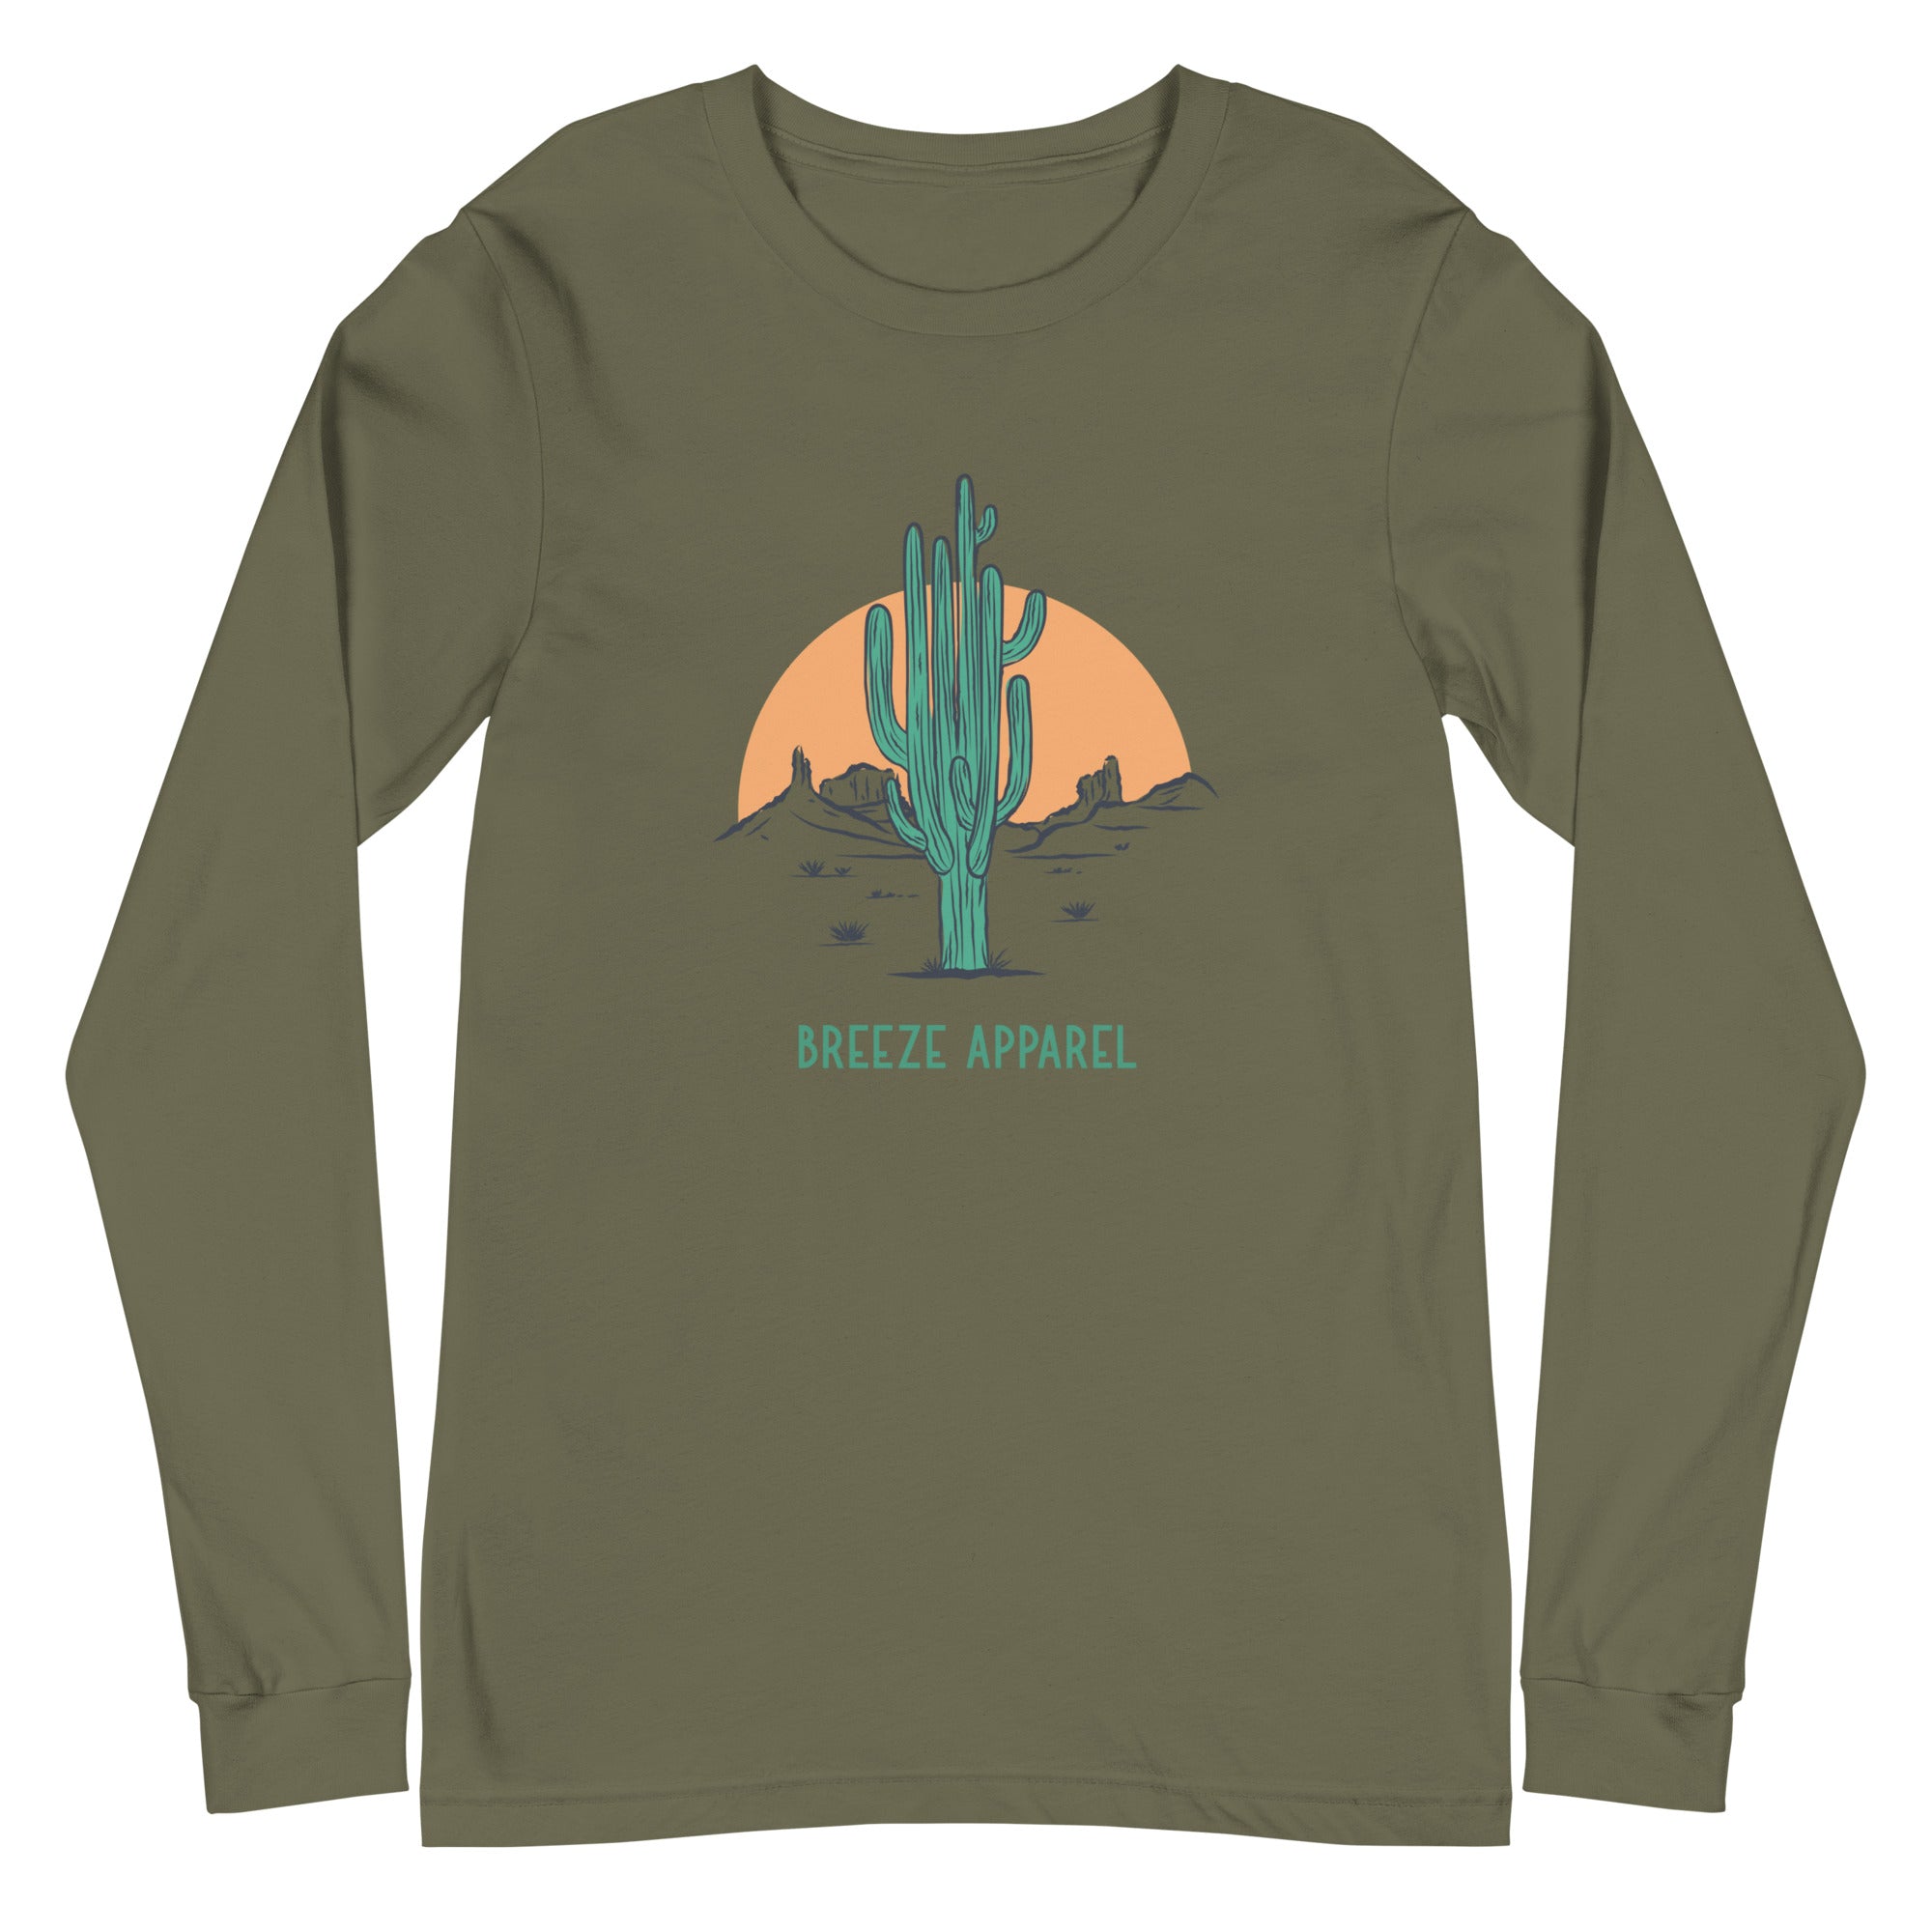 'Cactus Sunset' unisex long-sleeved shirt